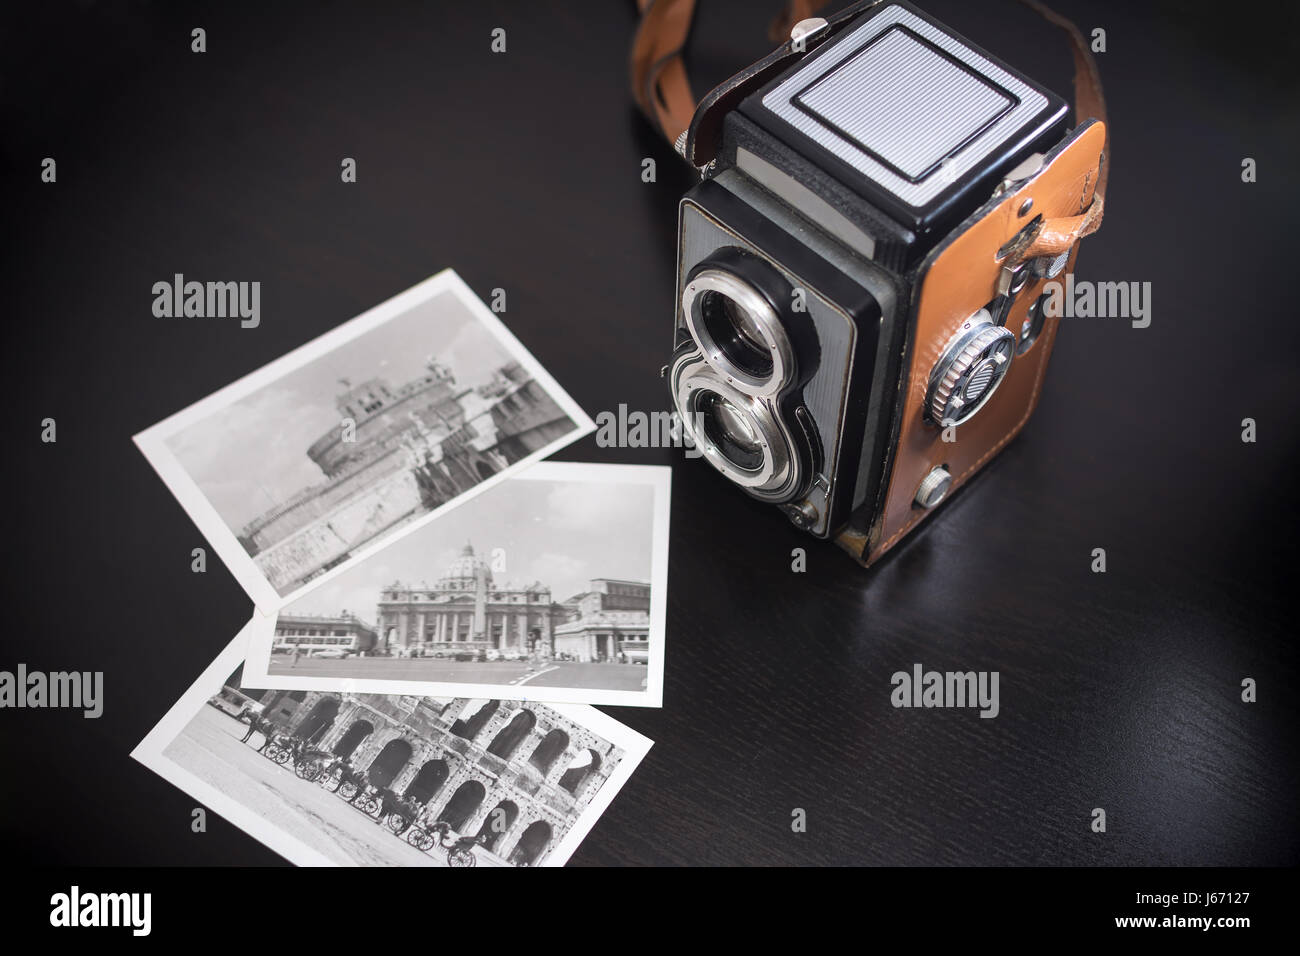 Ancienne biooptic et appareil photo photos anciennes en noir et blanc Banque D'Images